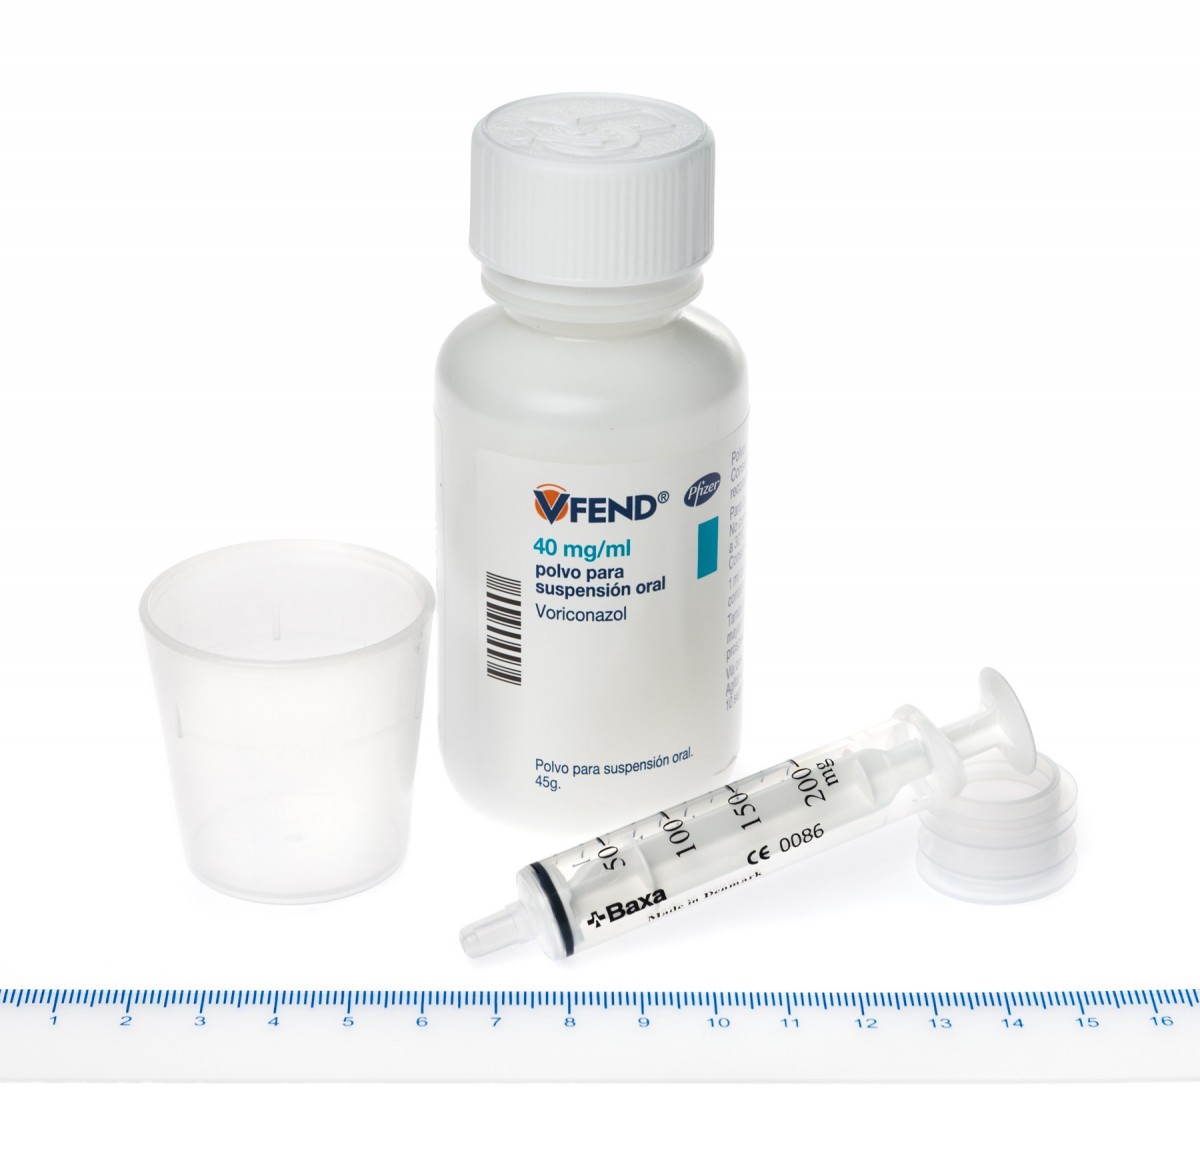 VFEND 40 mg/ml POLVO PARA SUSPENSION ORAL, 1 frasco de 75 ml fotografía de la forma farmacéutica.